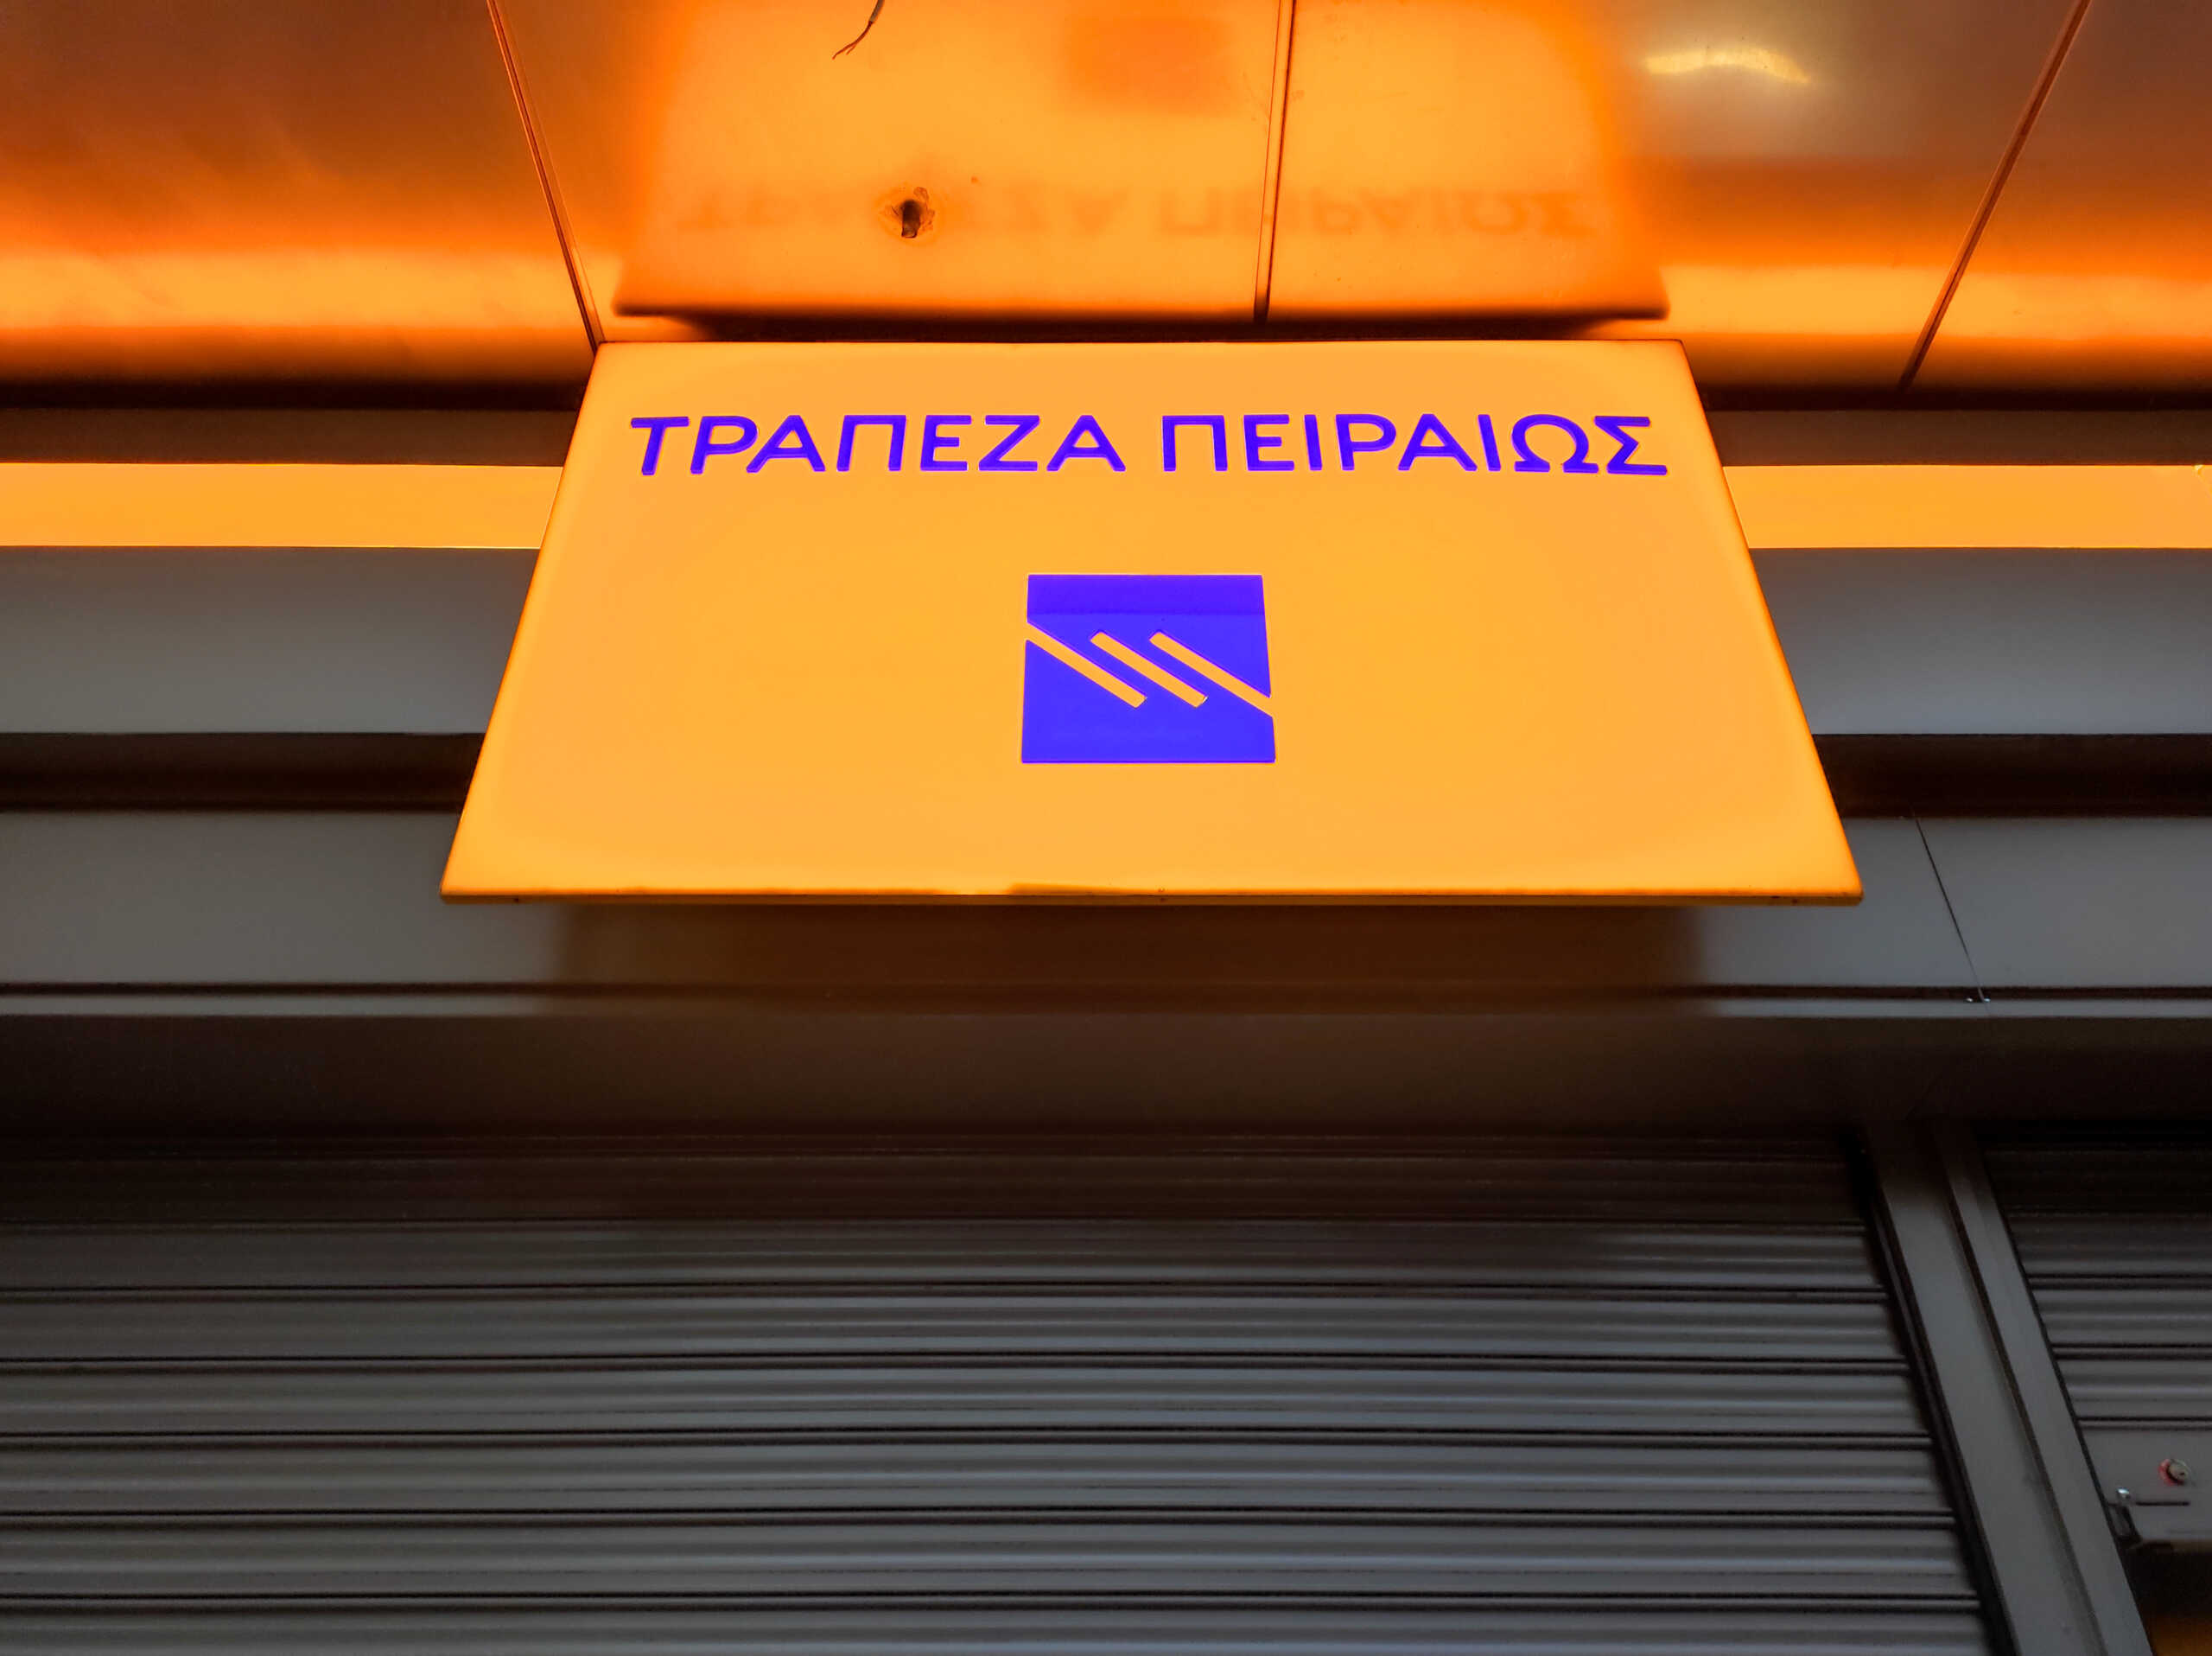 ΤΧΣ: Σε Έλληνες επενδυτές το 20% των προσφερόμενων μετοχών του placement της Τράπεζας Πειραιώς